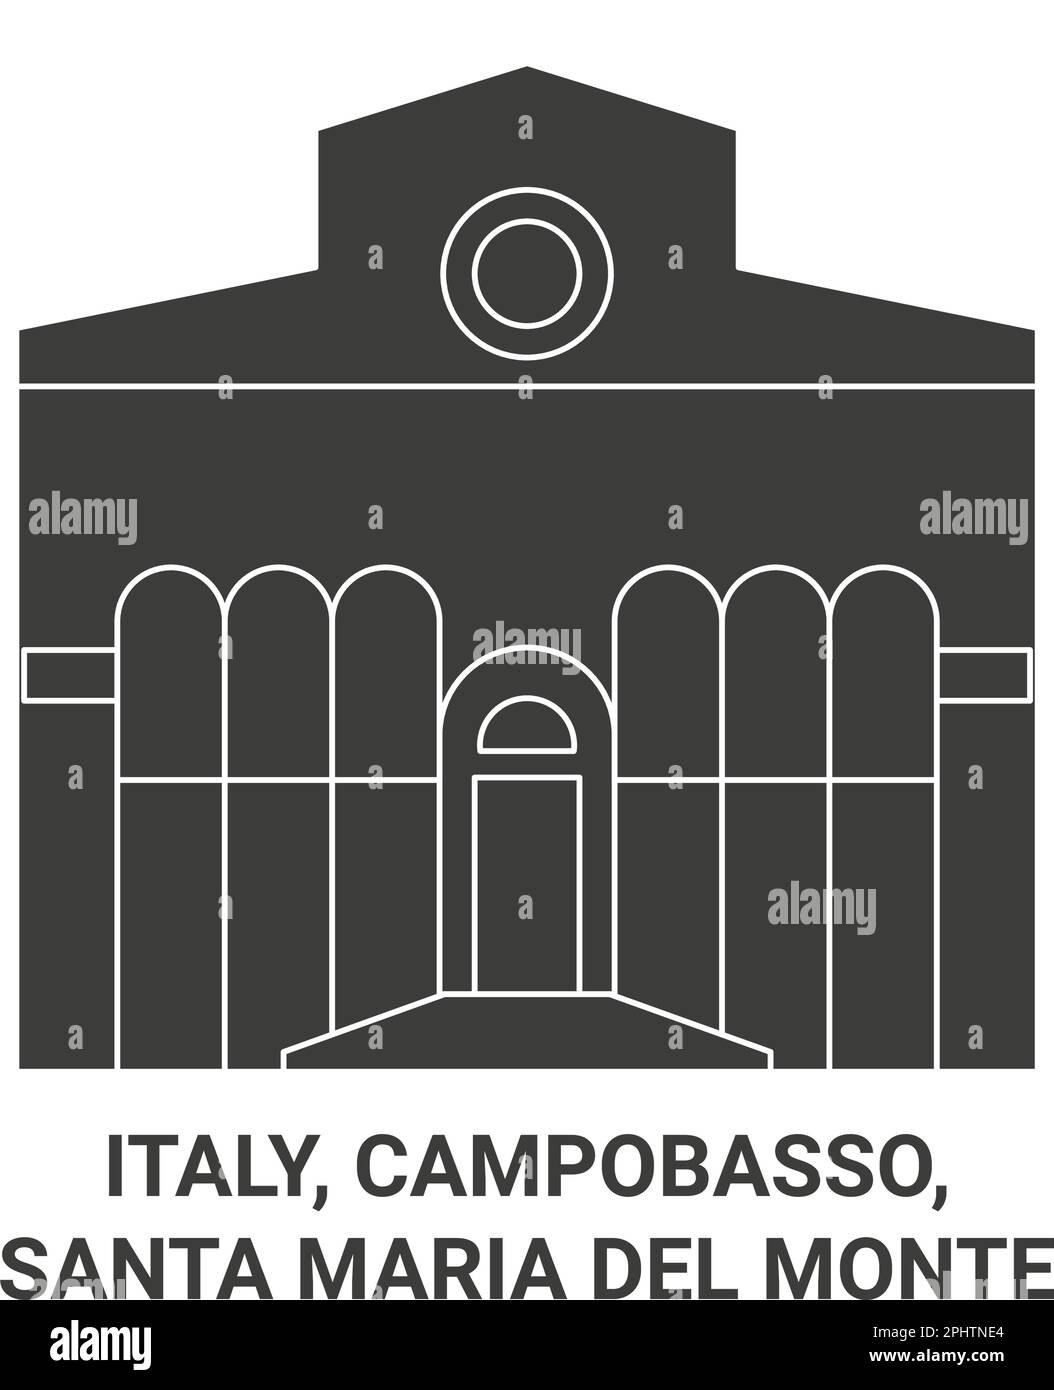 Italia, Campobasso, Santa Maria Del Monte ilustración vectorial de referencia de viaje Ilustración del Vector